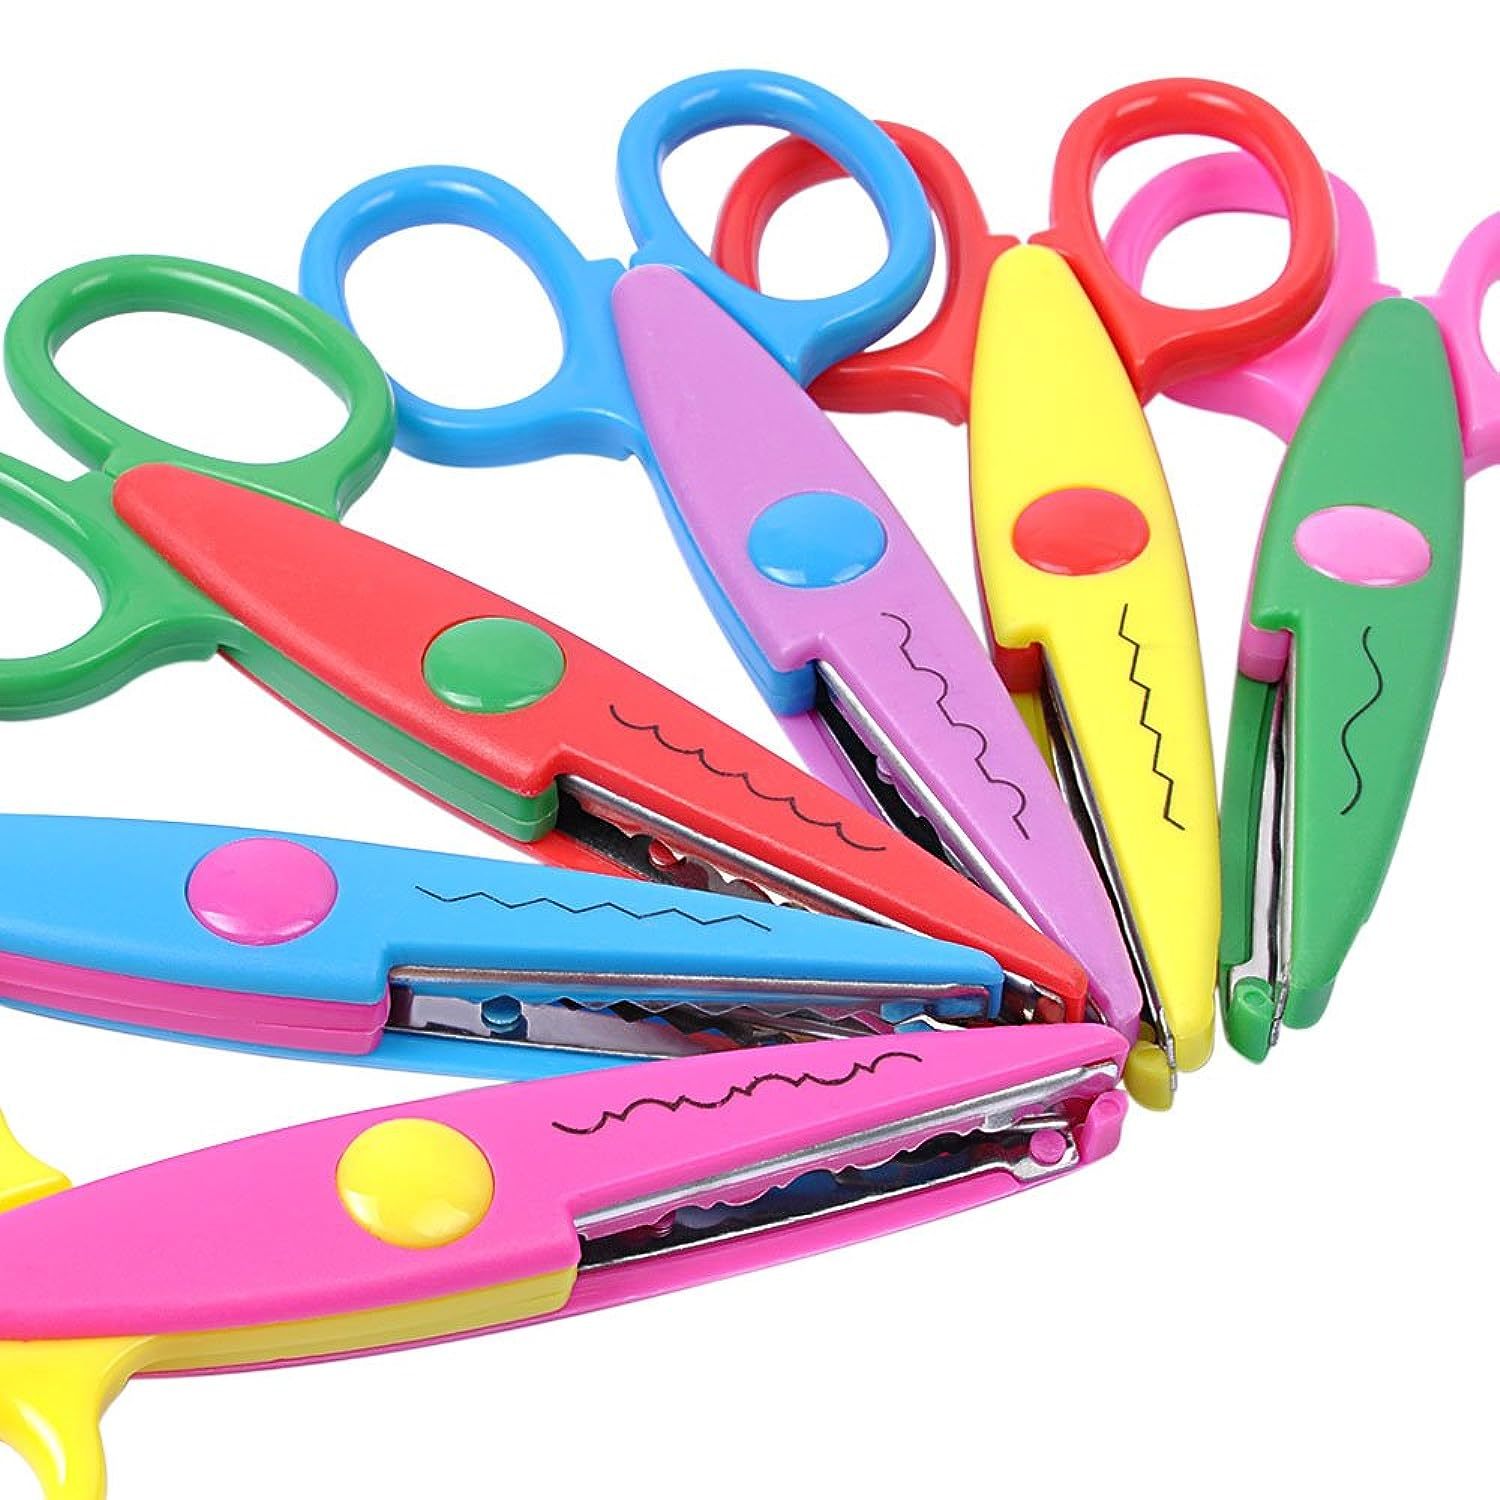 3 Pieces Toddler Safety Scissors In Animal Designs, Kids Preschool